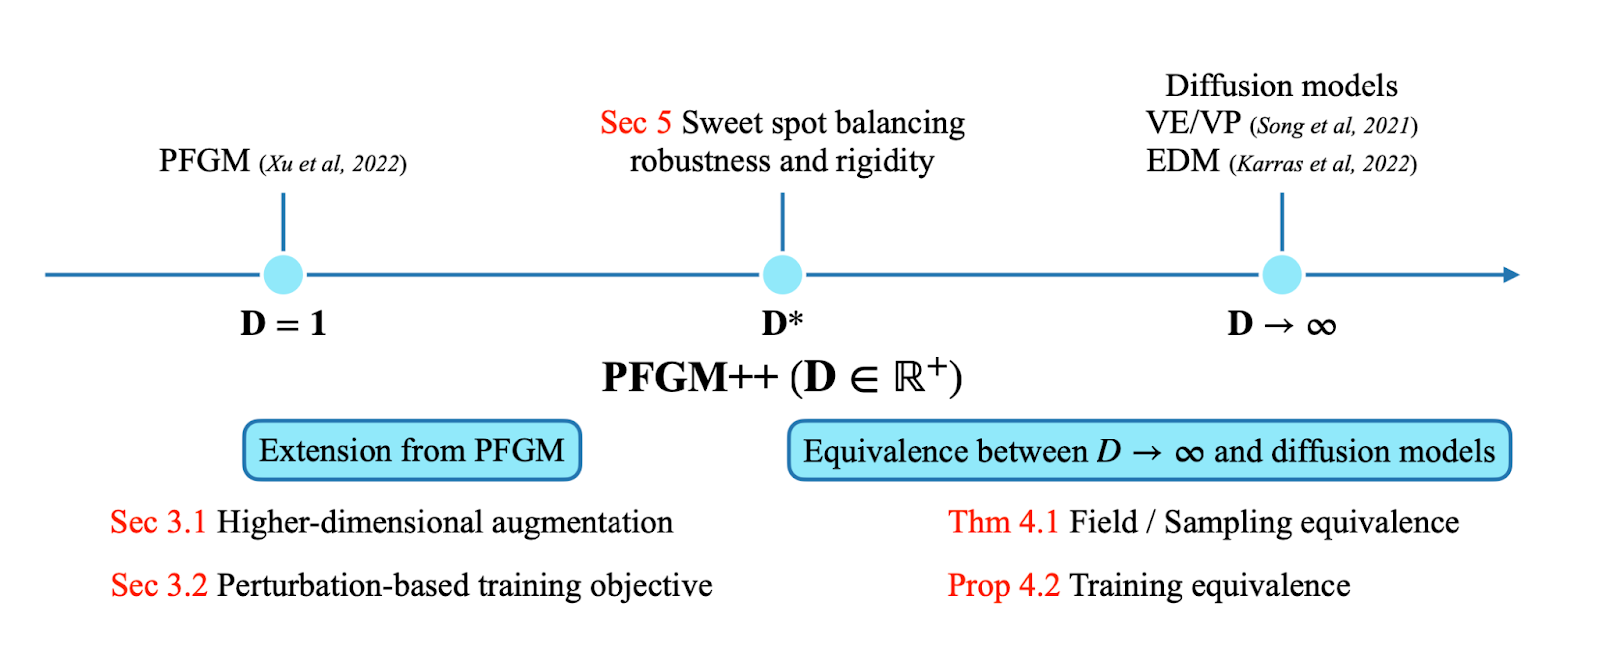 Модель PFGM и стандартная диффузионная модель находятся на противоположных концах спектра: одна надежна, но сложна в обращении, другая проще, но менее надежна.